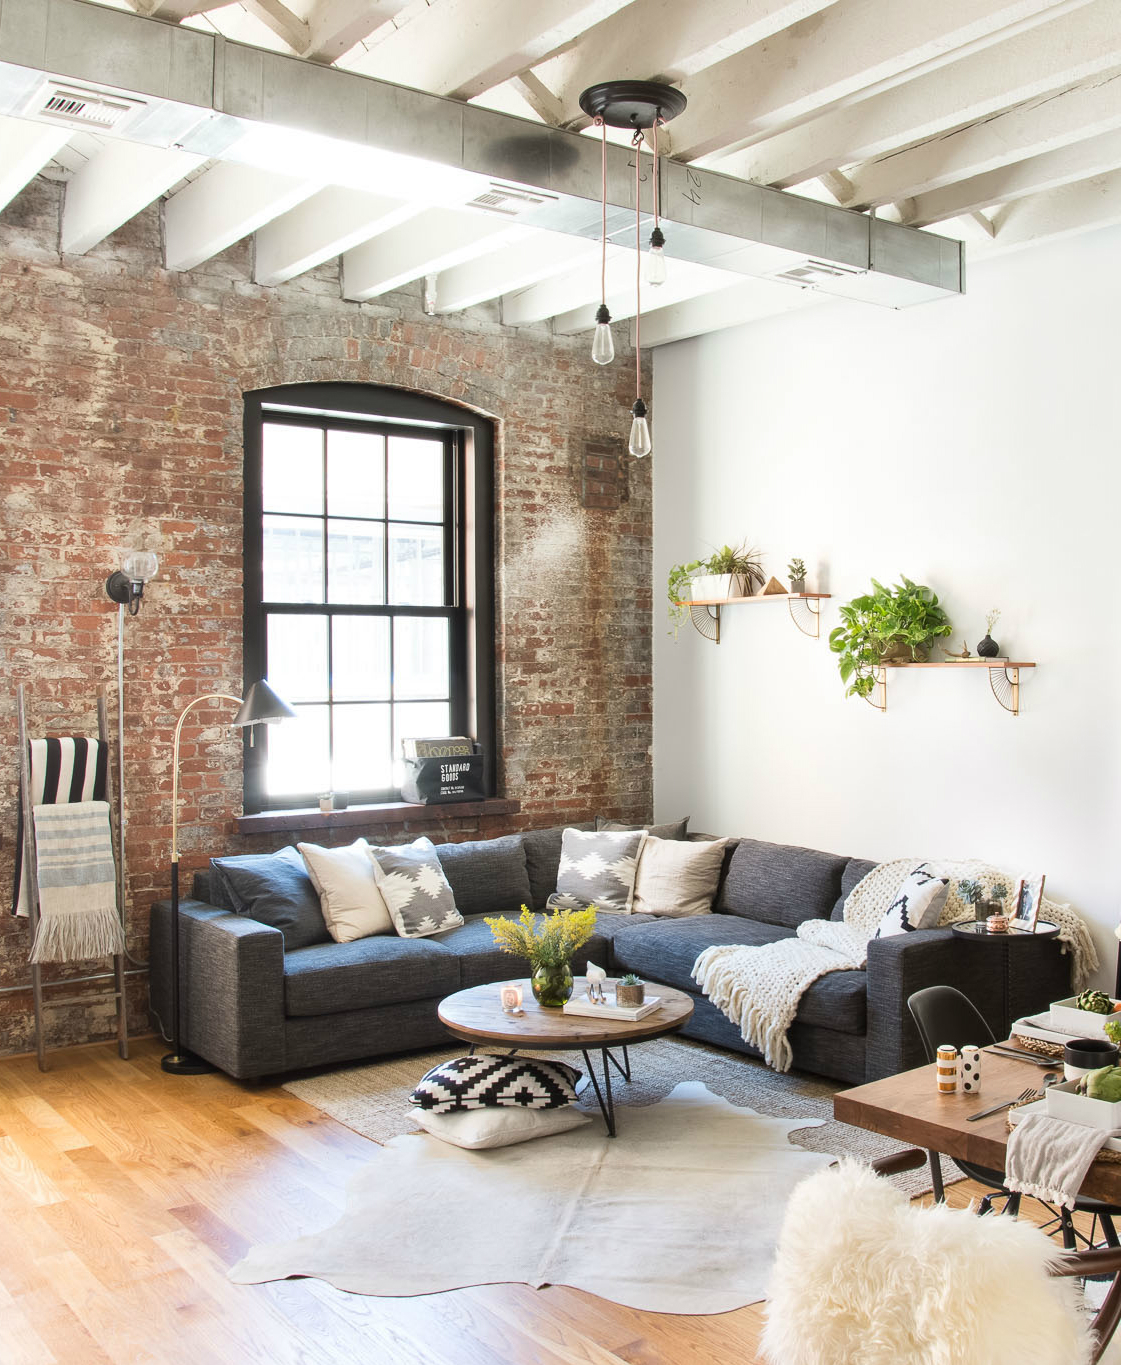 10 Decorating ideas for a cozy Home decor